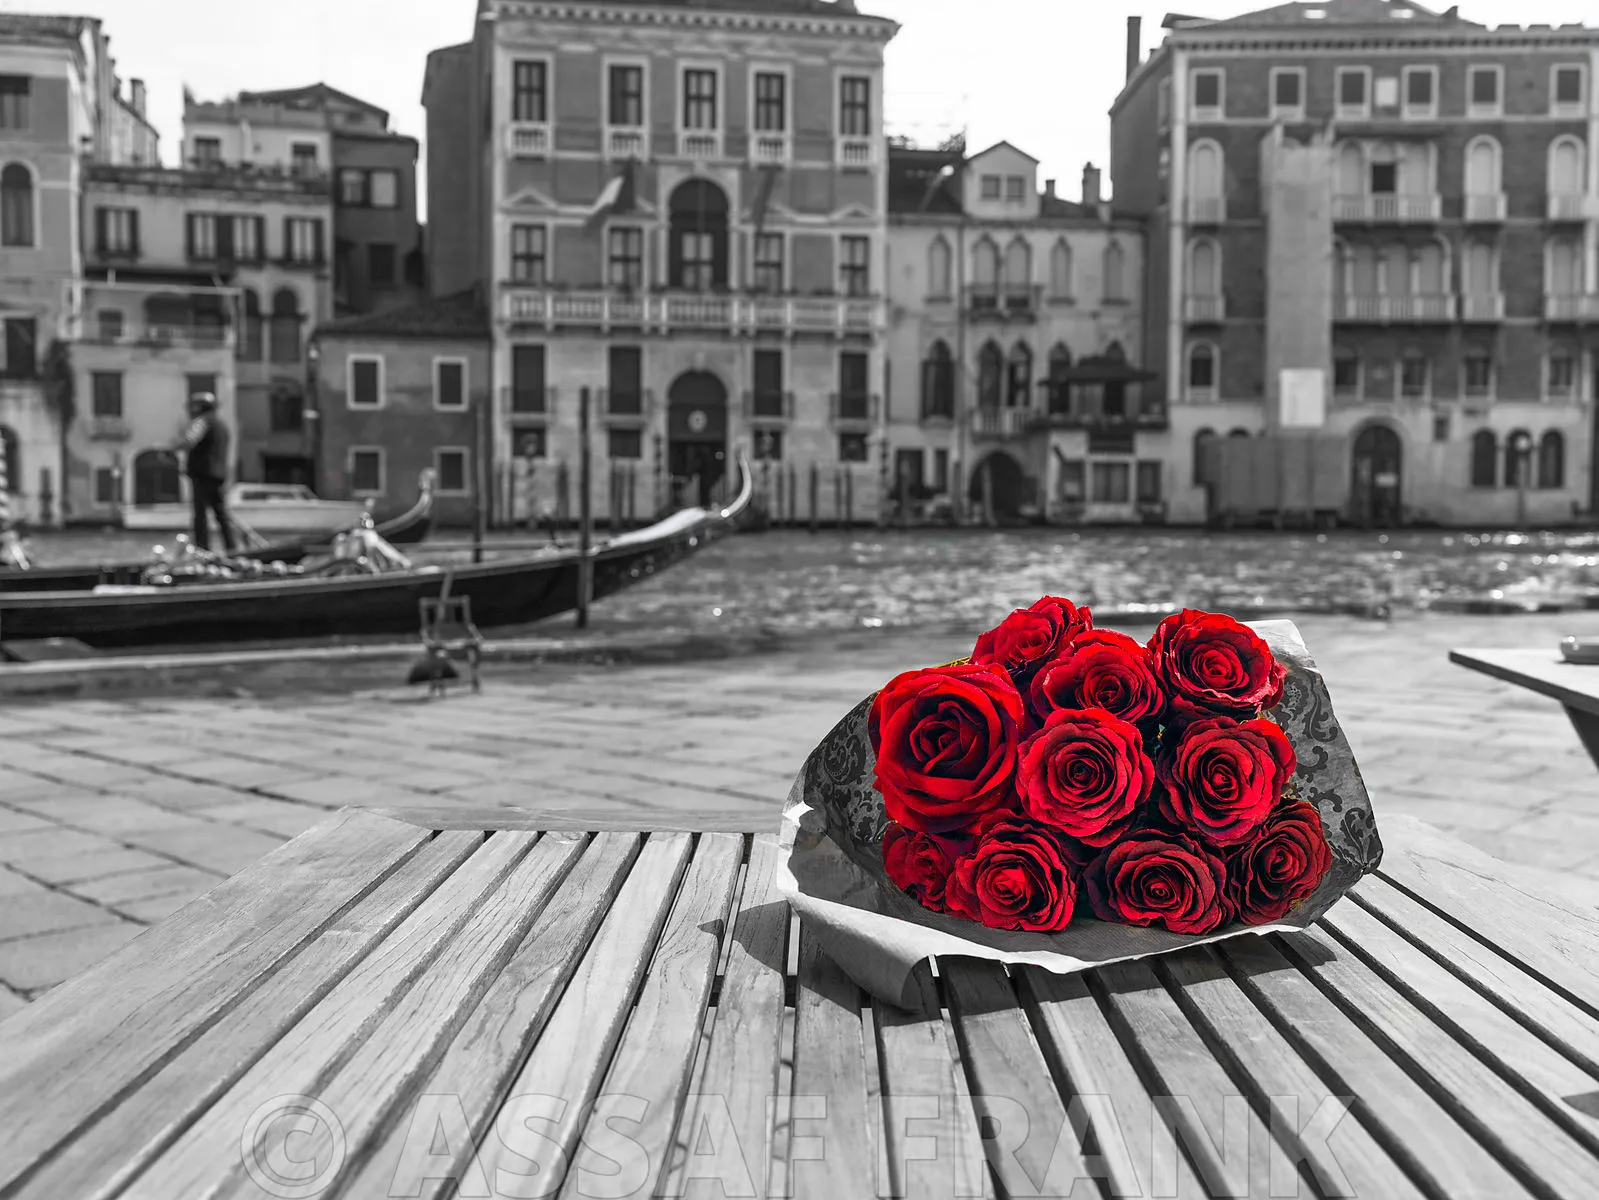 Красно черные фотографии. Романтичная Венеция \ фотограф Assaf Frank. Фотограф Assaf Frank (Великобритания. Ассаф Франк картины. Черно-белые с красным акцентом.